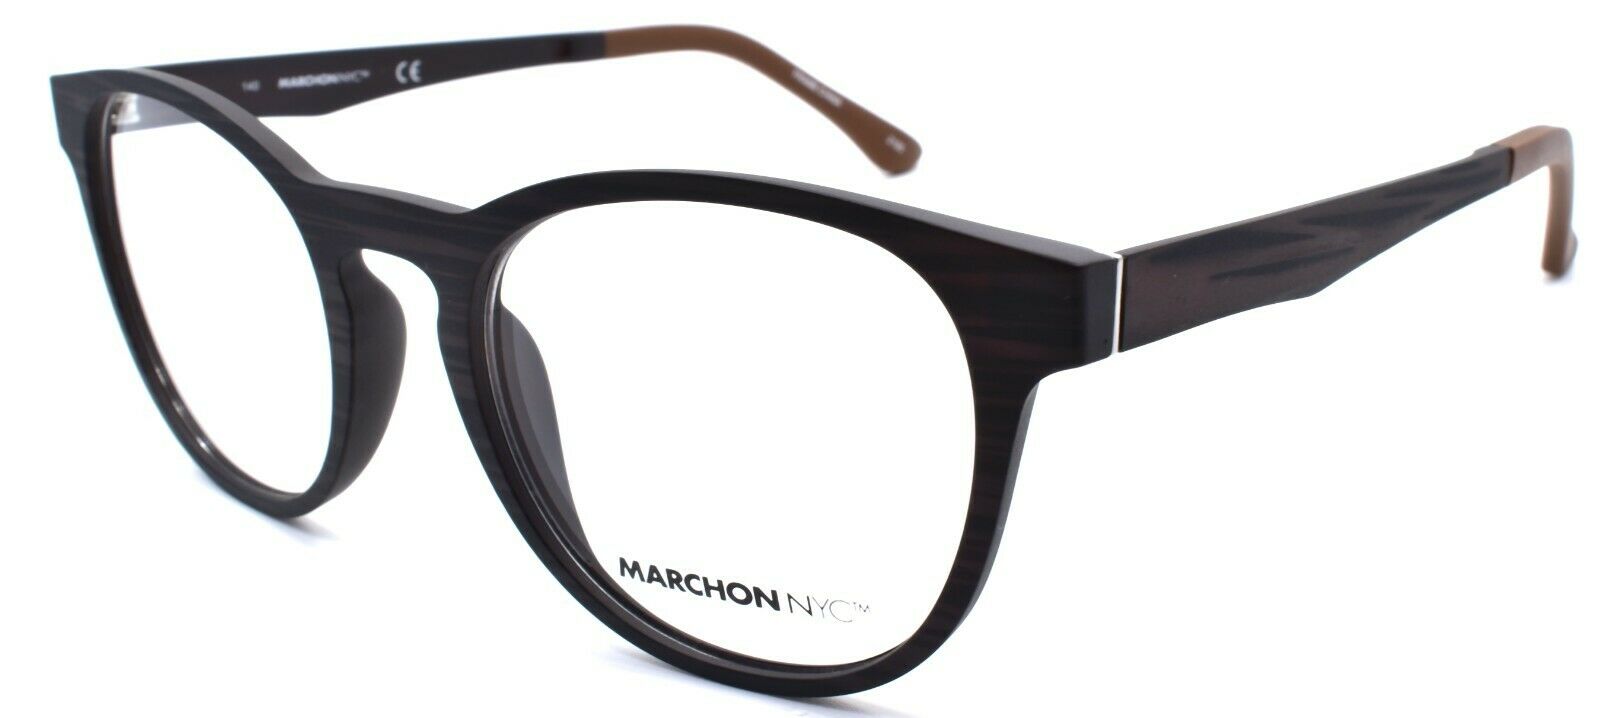 4-Marchon M-1502 210 Eyeglasses Frames 50-19-140 Matte Brown + 2 Magnetic Clip Ons-886895484367-IKSpecs